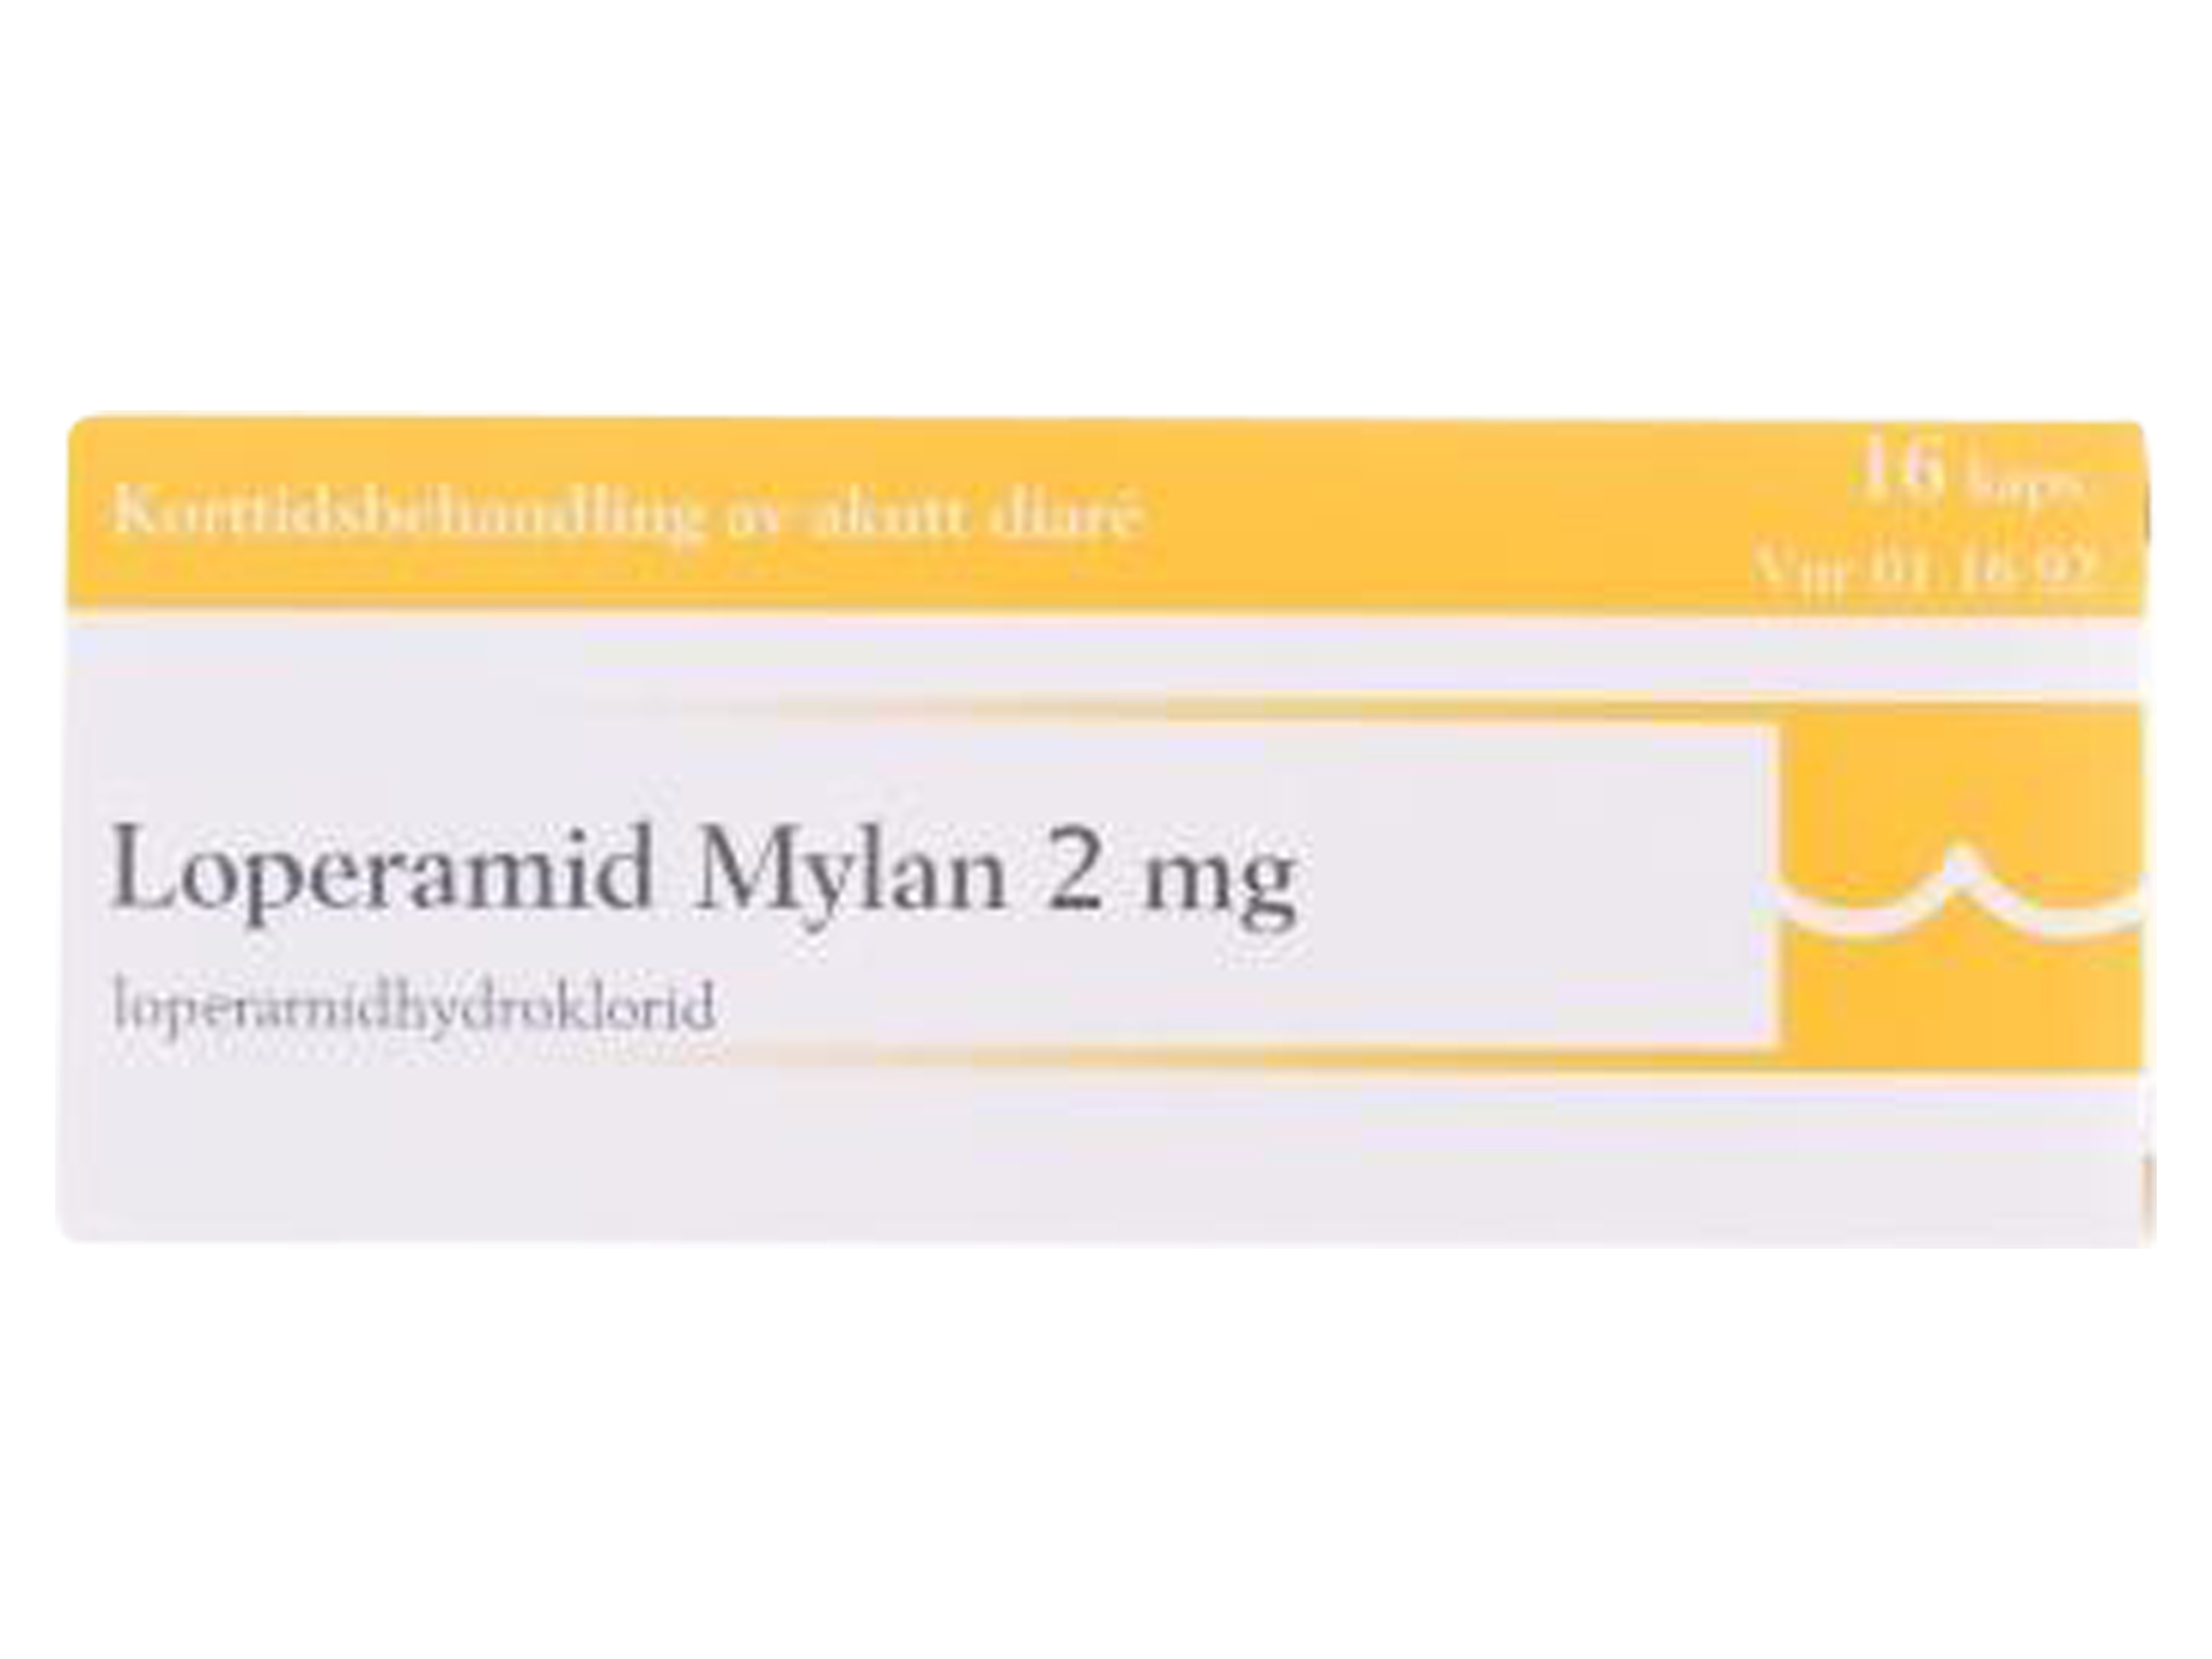 Loperamid Mylan kapsler 2 mg, 16 x 1 stk.